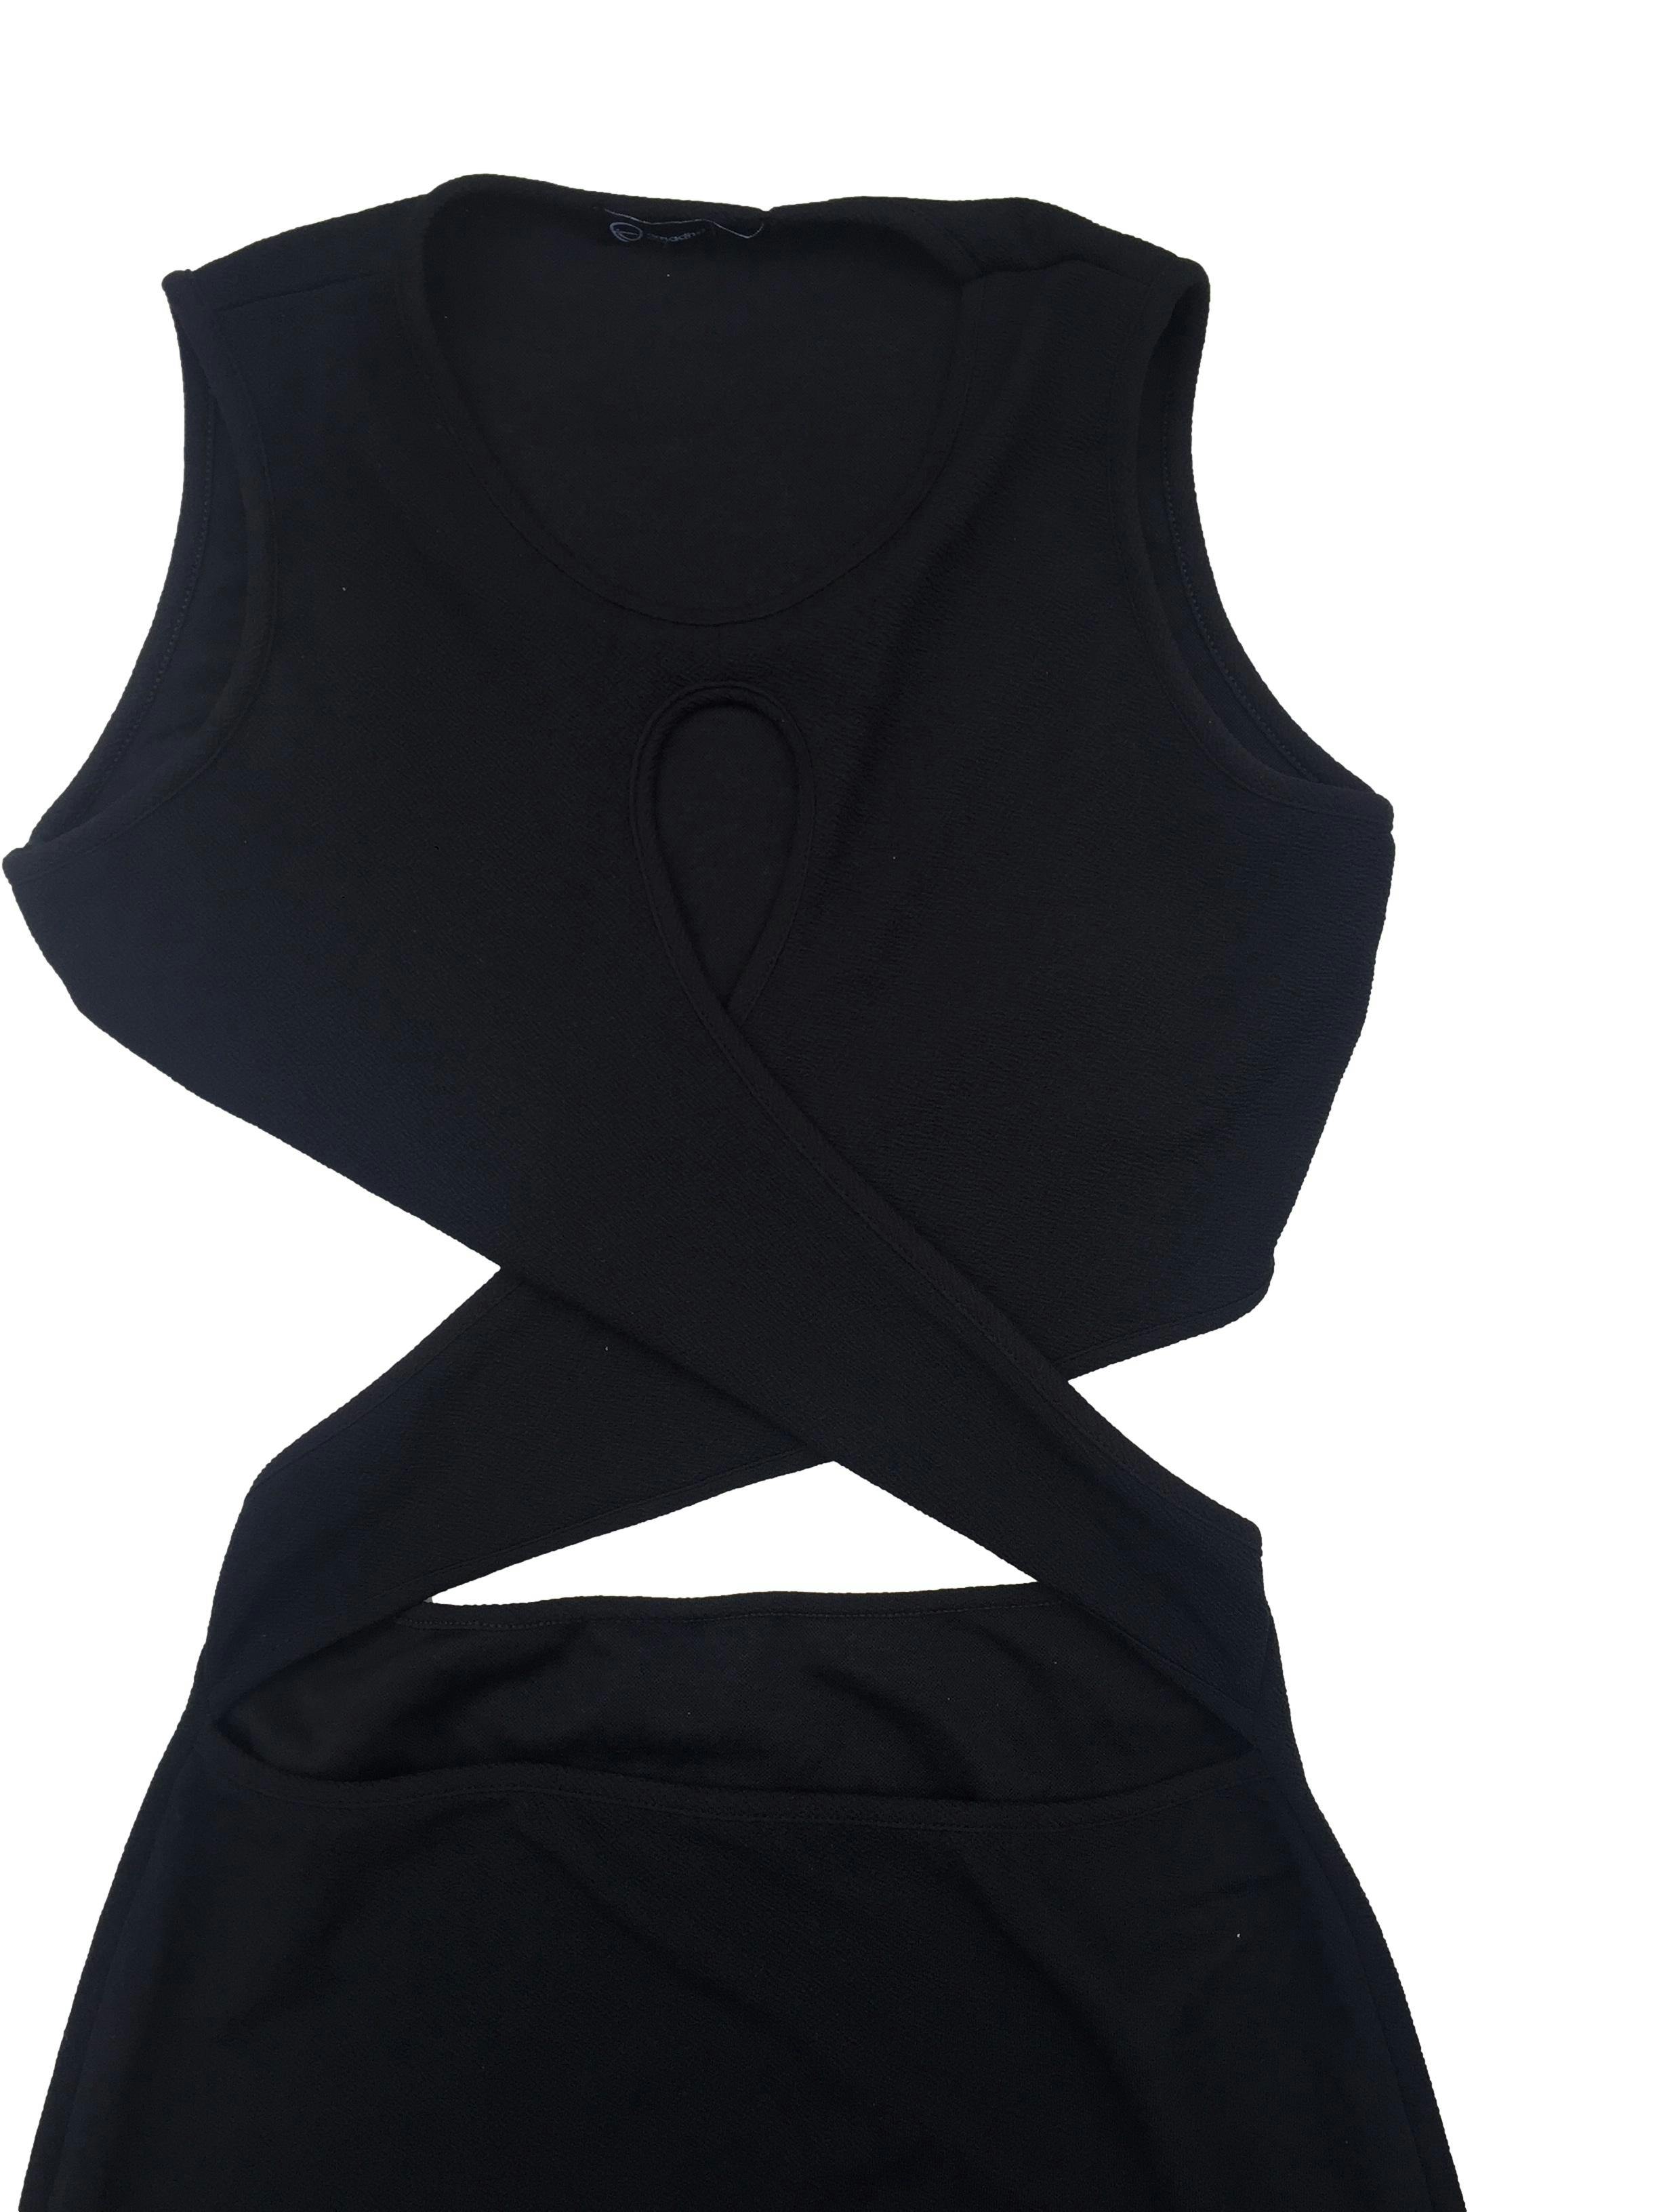 Vestido negro entrelazado en el medio, abierto en la cintura tela stretch. Busto: 90cm, Largo: 82cm